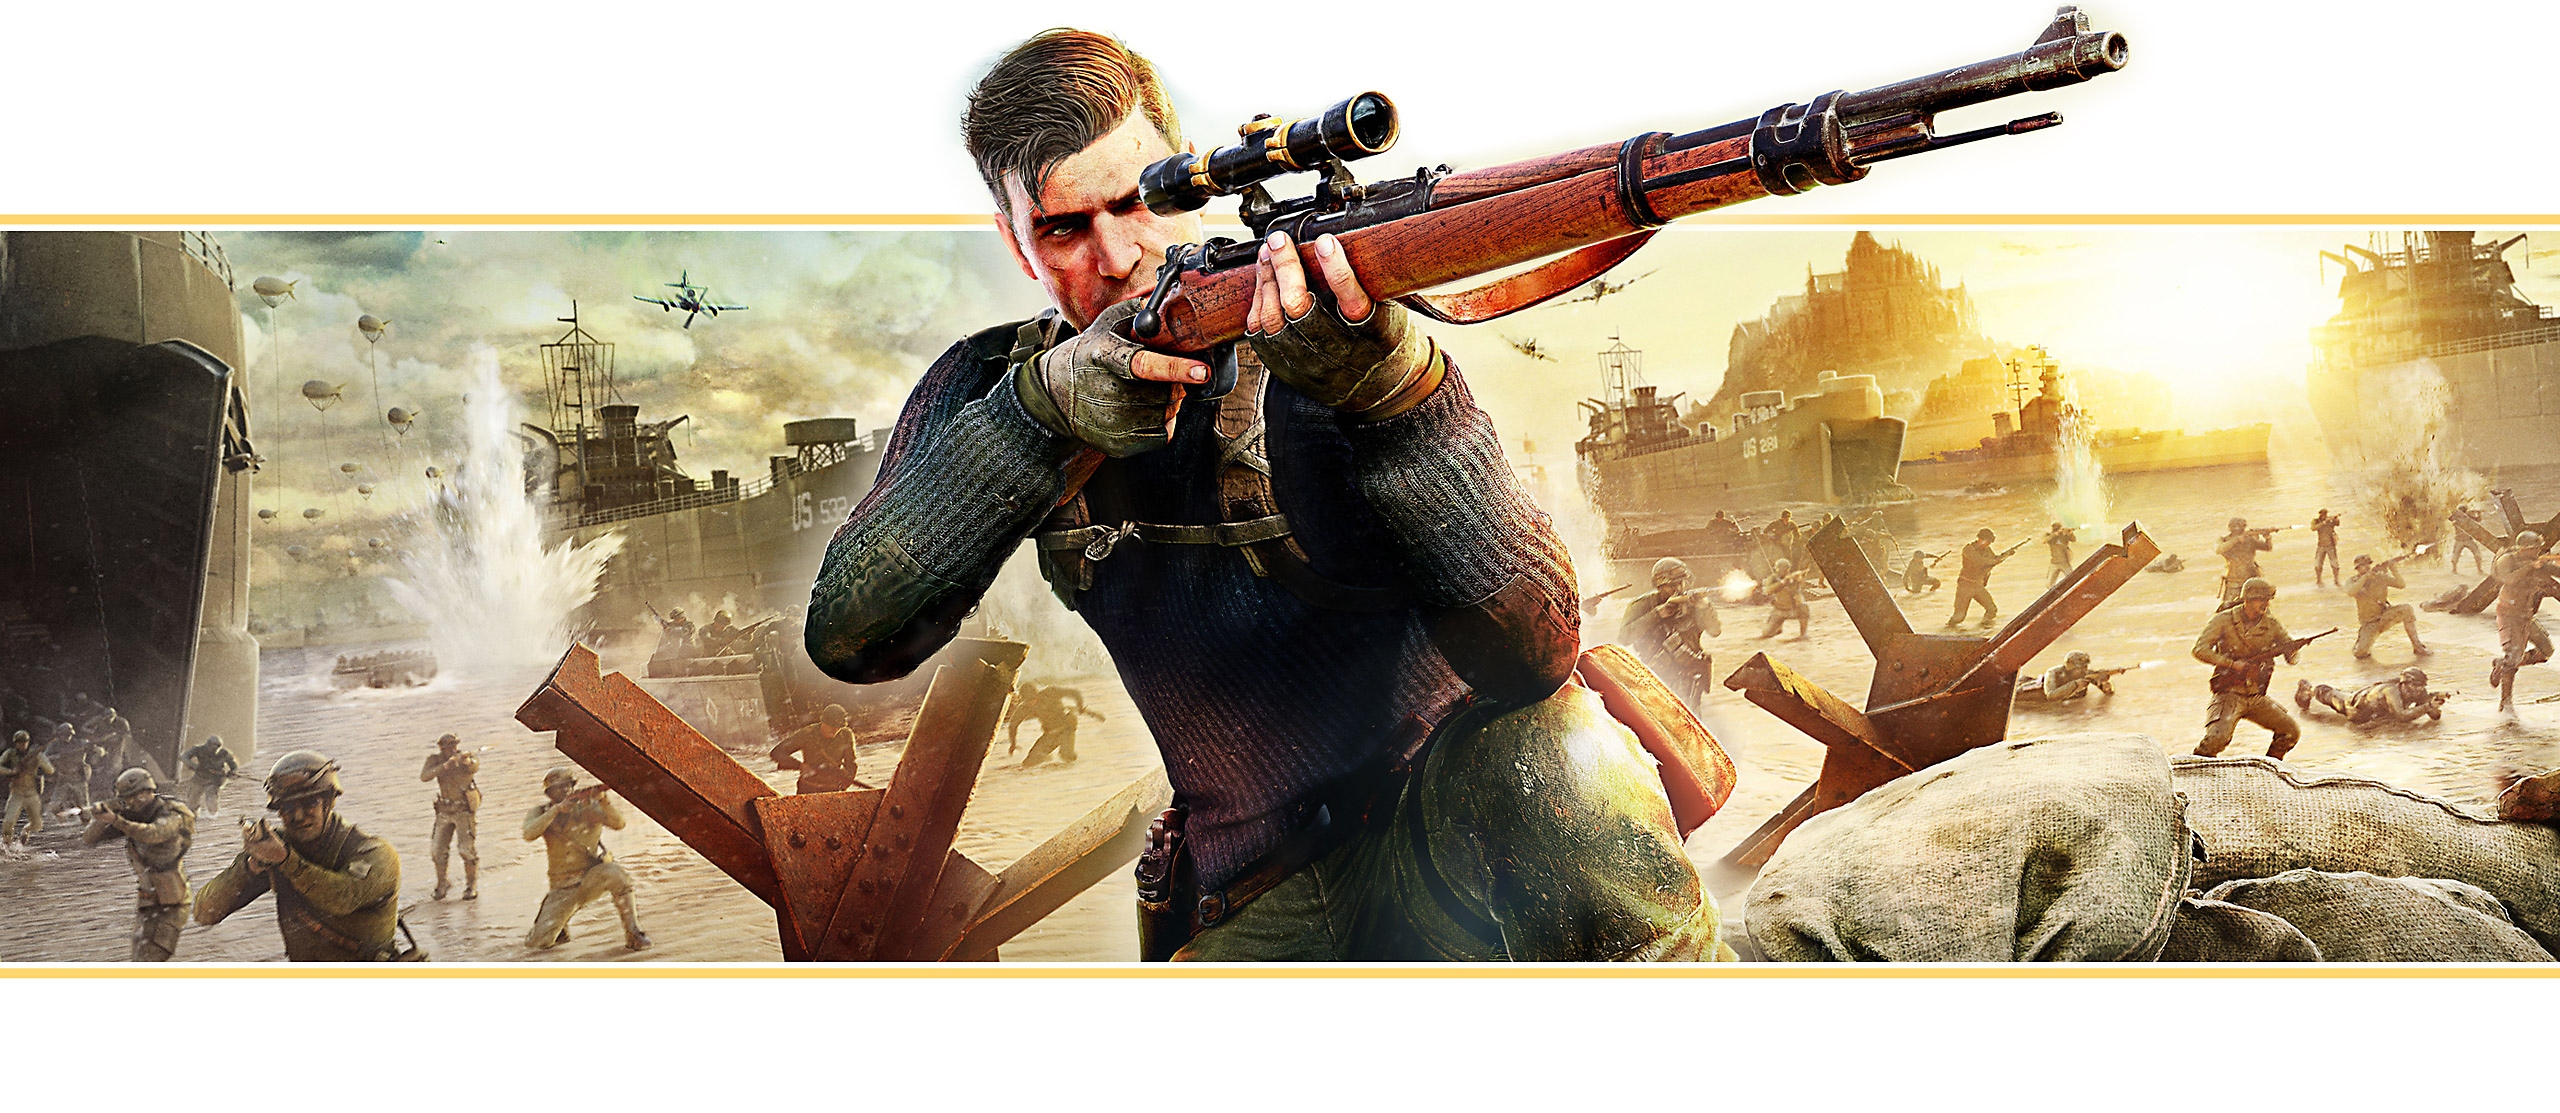 بانر للعبة Sniper Elite 5 من صورة فنية أساسية للعبة تظهر فيه الشخصية الرئيسية وهي تصوّب بالبندقية القنّاصة